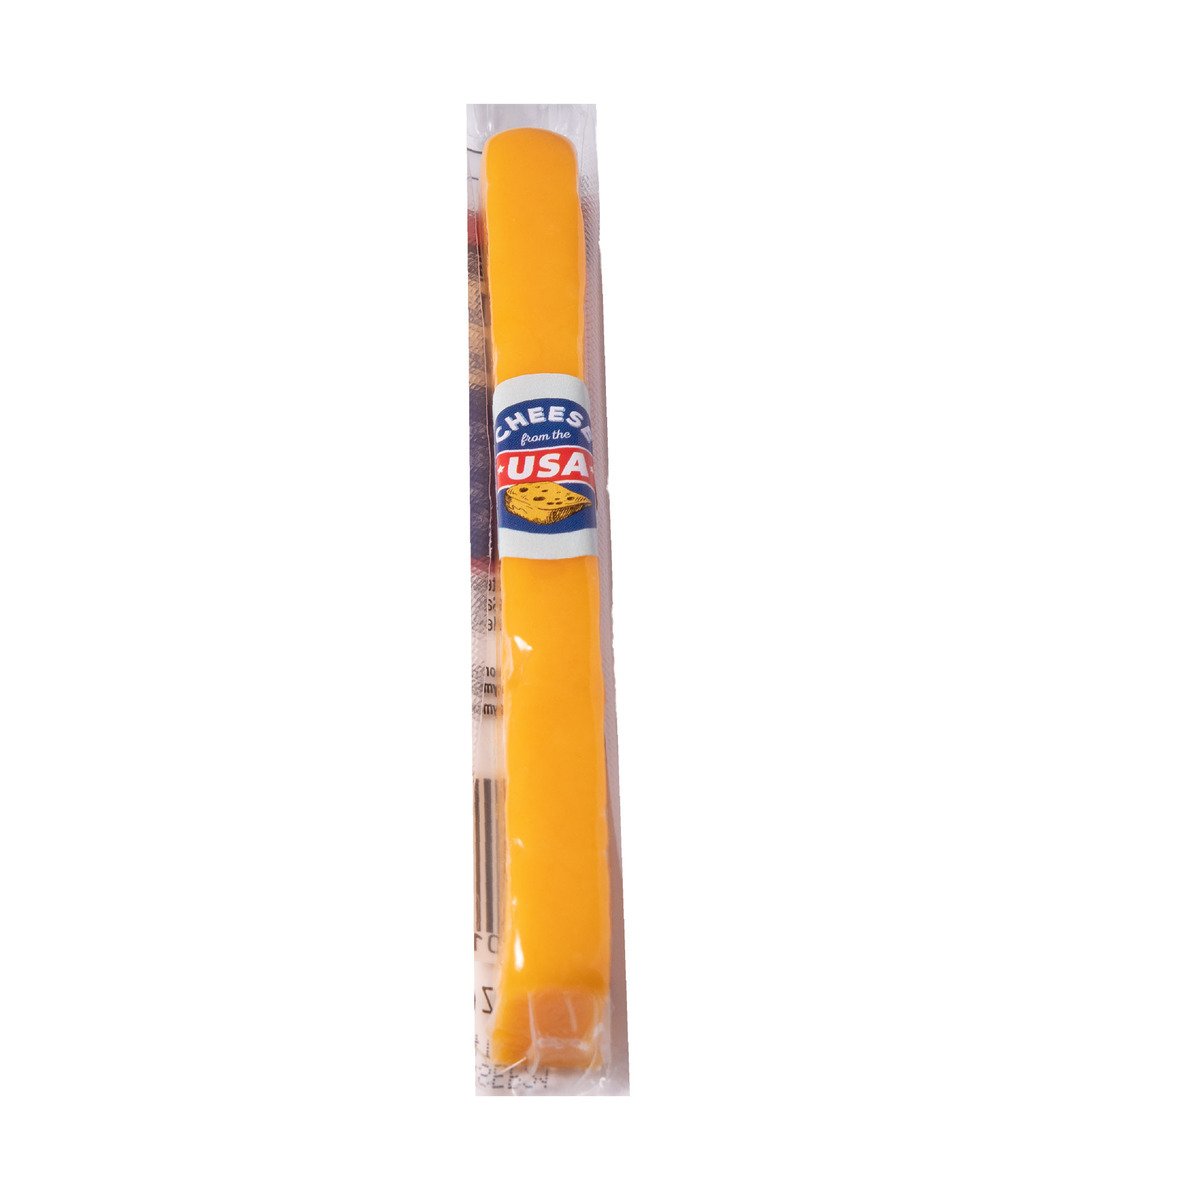 Sargento Mild Cheddar Cheese Stick 28 g